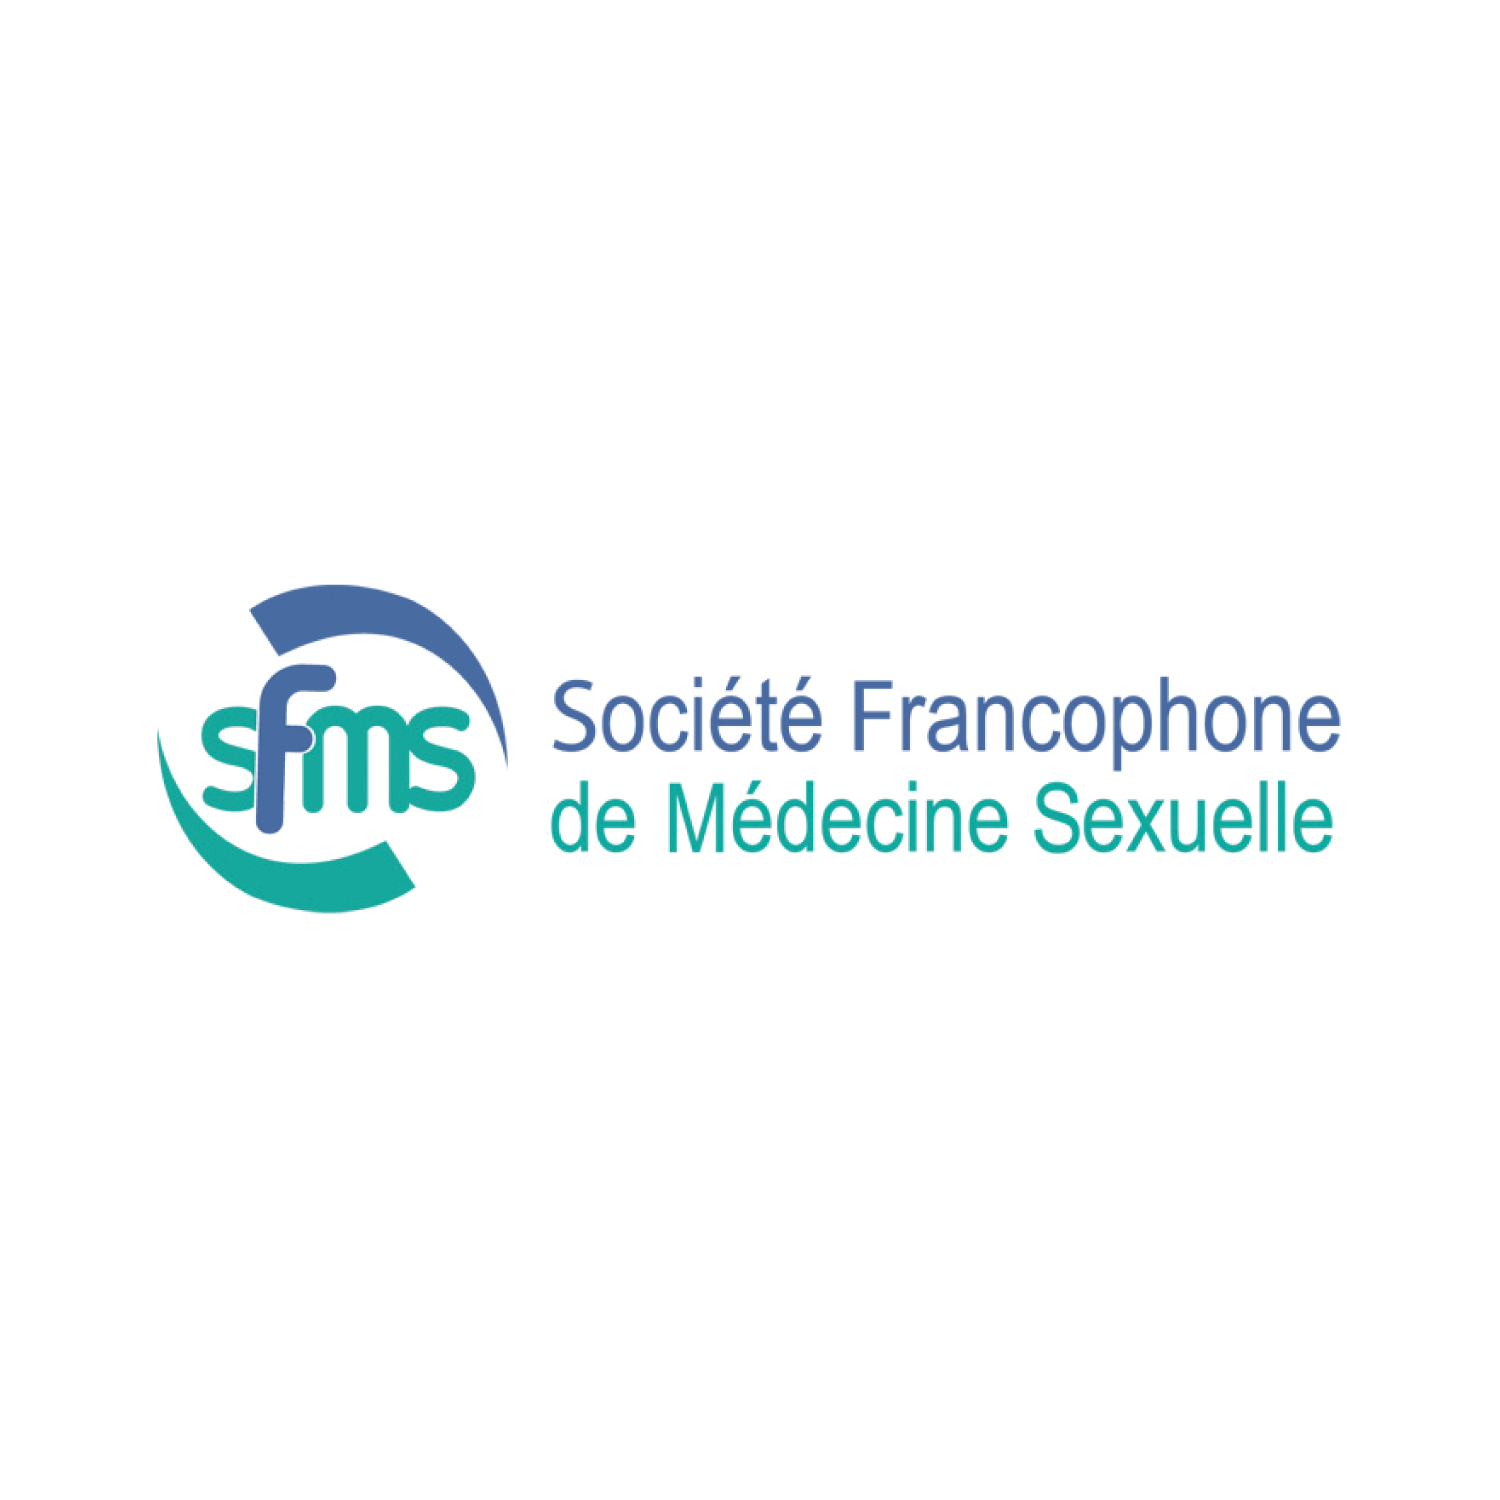 Société Francophone de Médecine Sexuelle